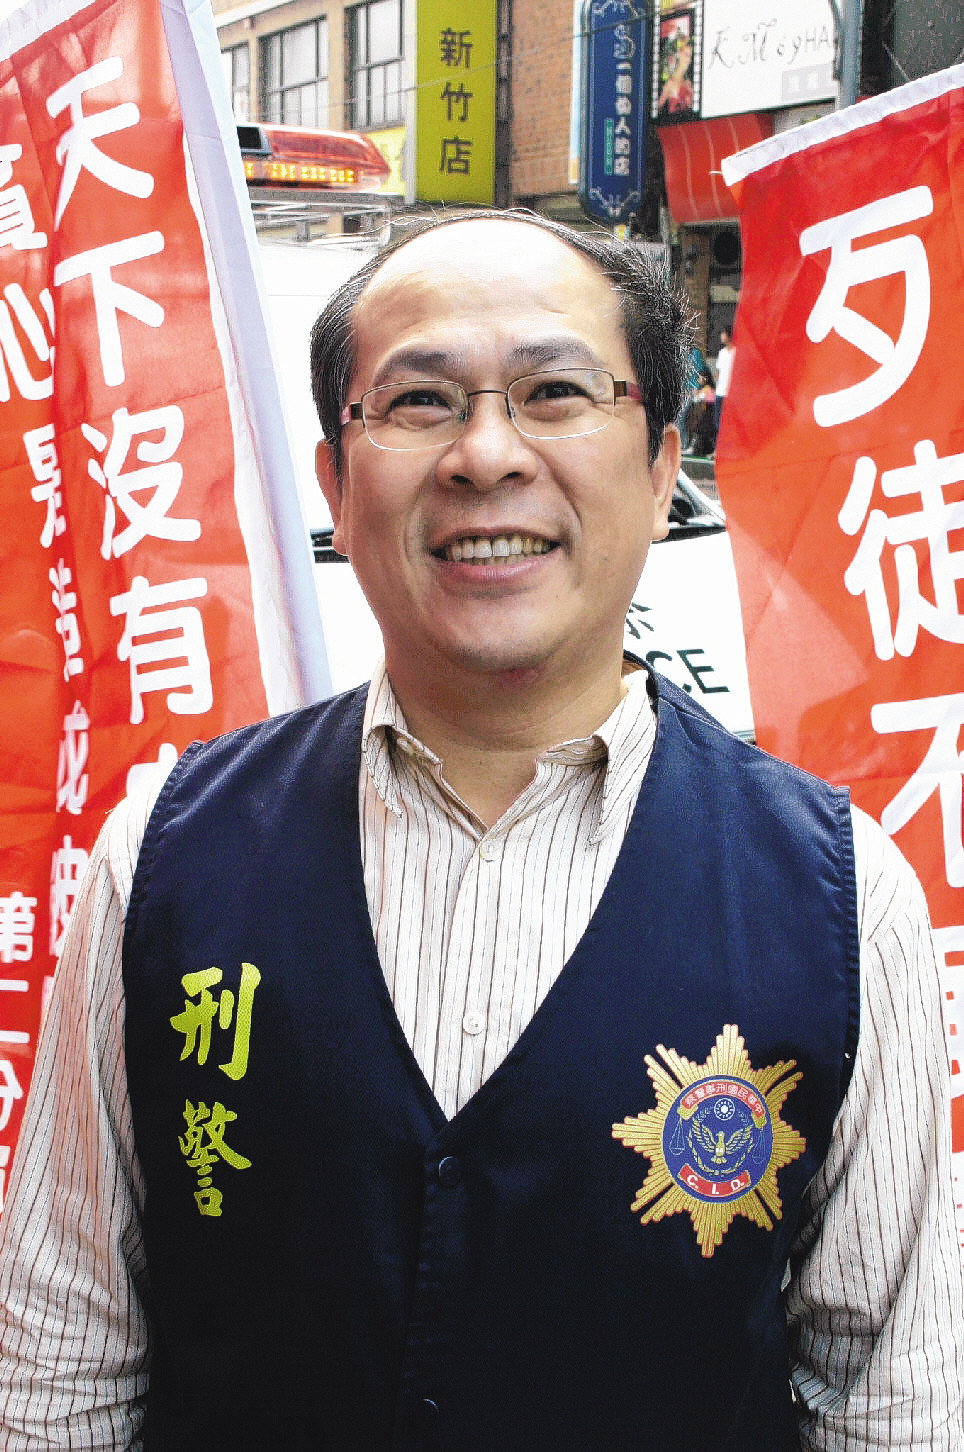 新竹市警局两线三星保安科秘书宋瑞展涉贪遭羁押。本报系资料照